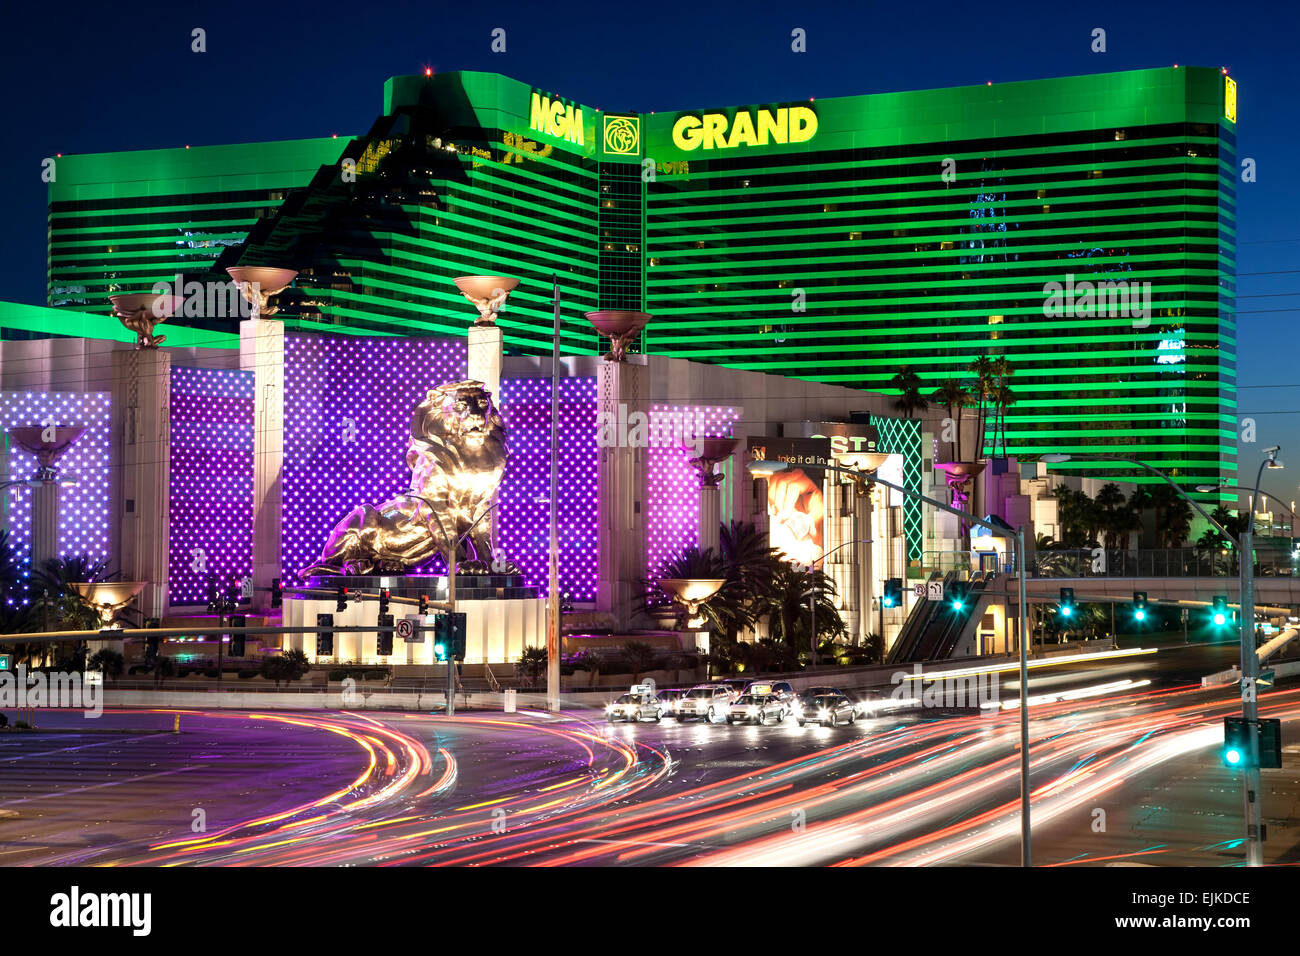 El MGM Grand Hotel y vetas de luz, el Strip, en Las Vegas, Nevada, EE.UU. Foto de stock